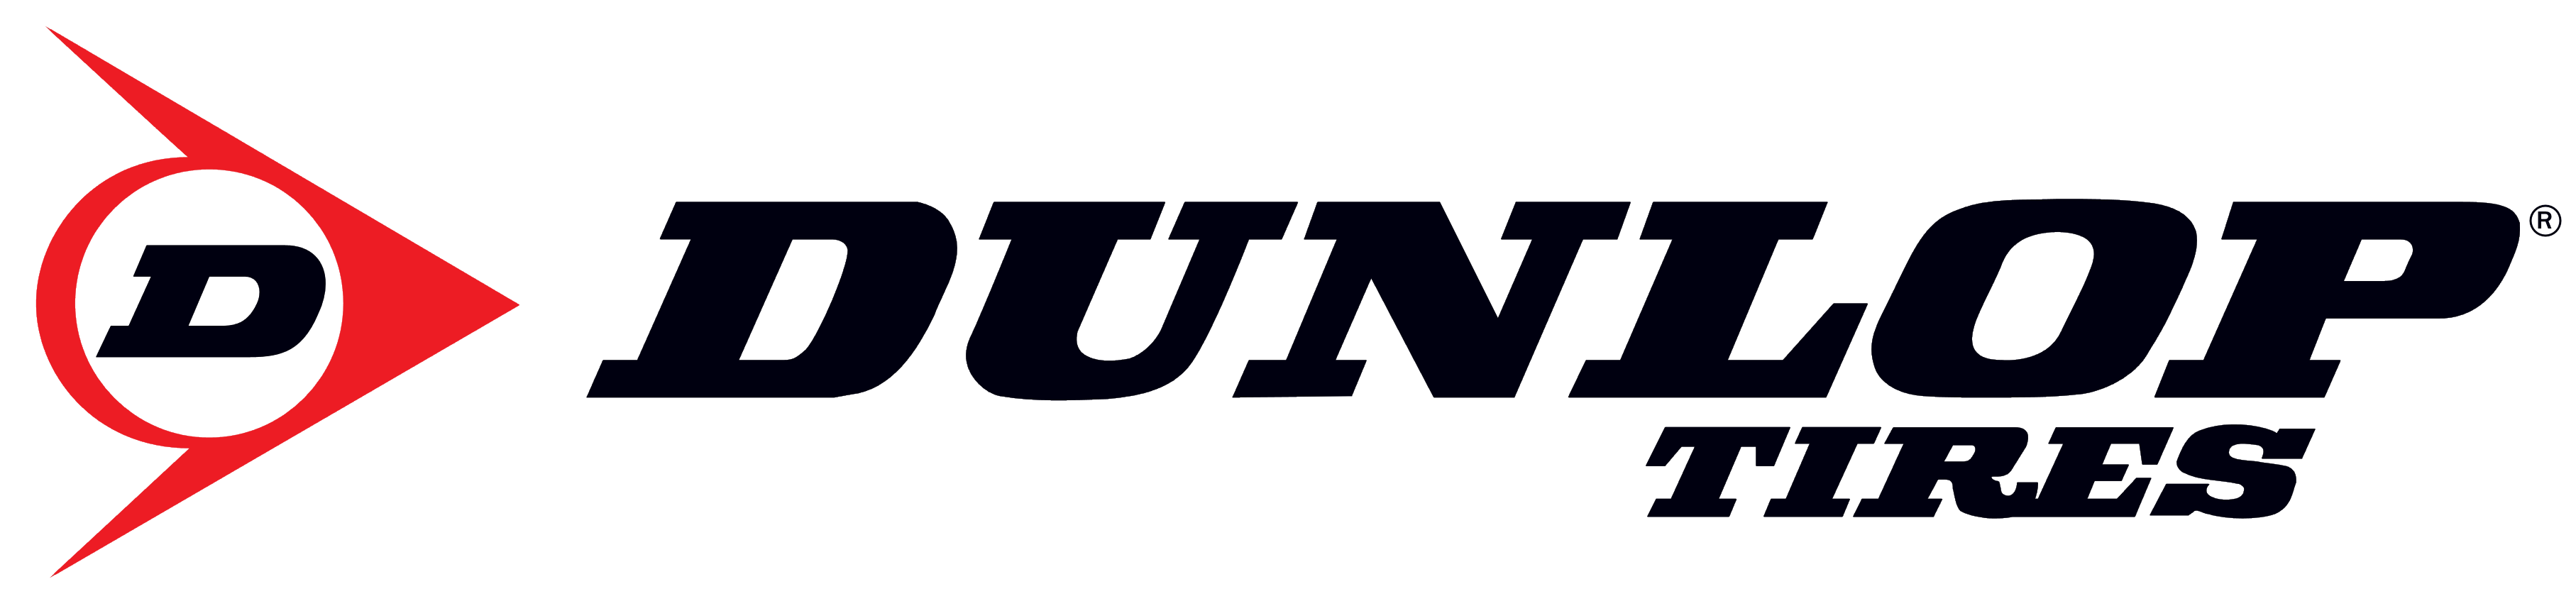 Image result for dunlop tires logo png